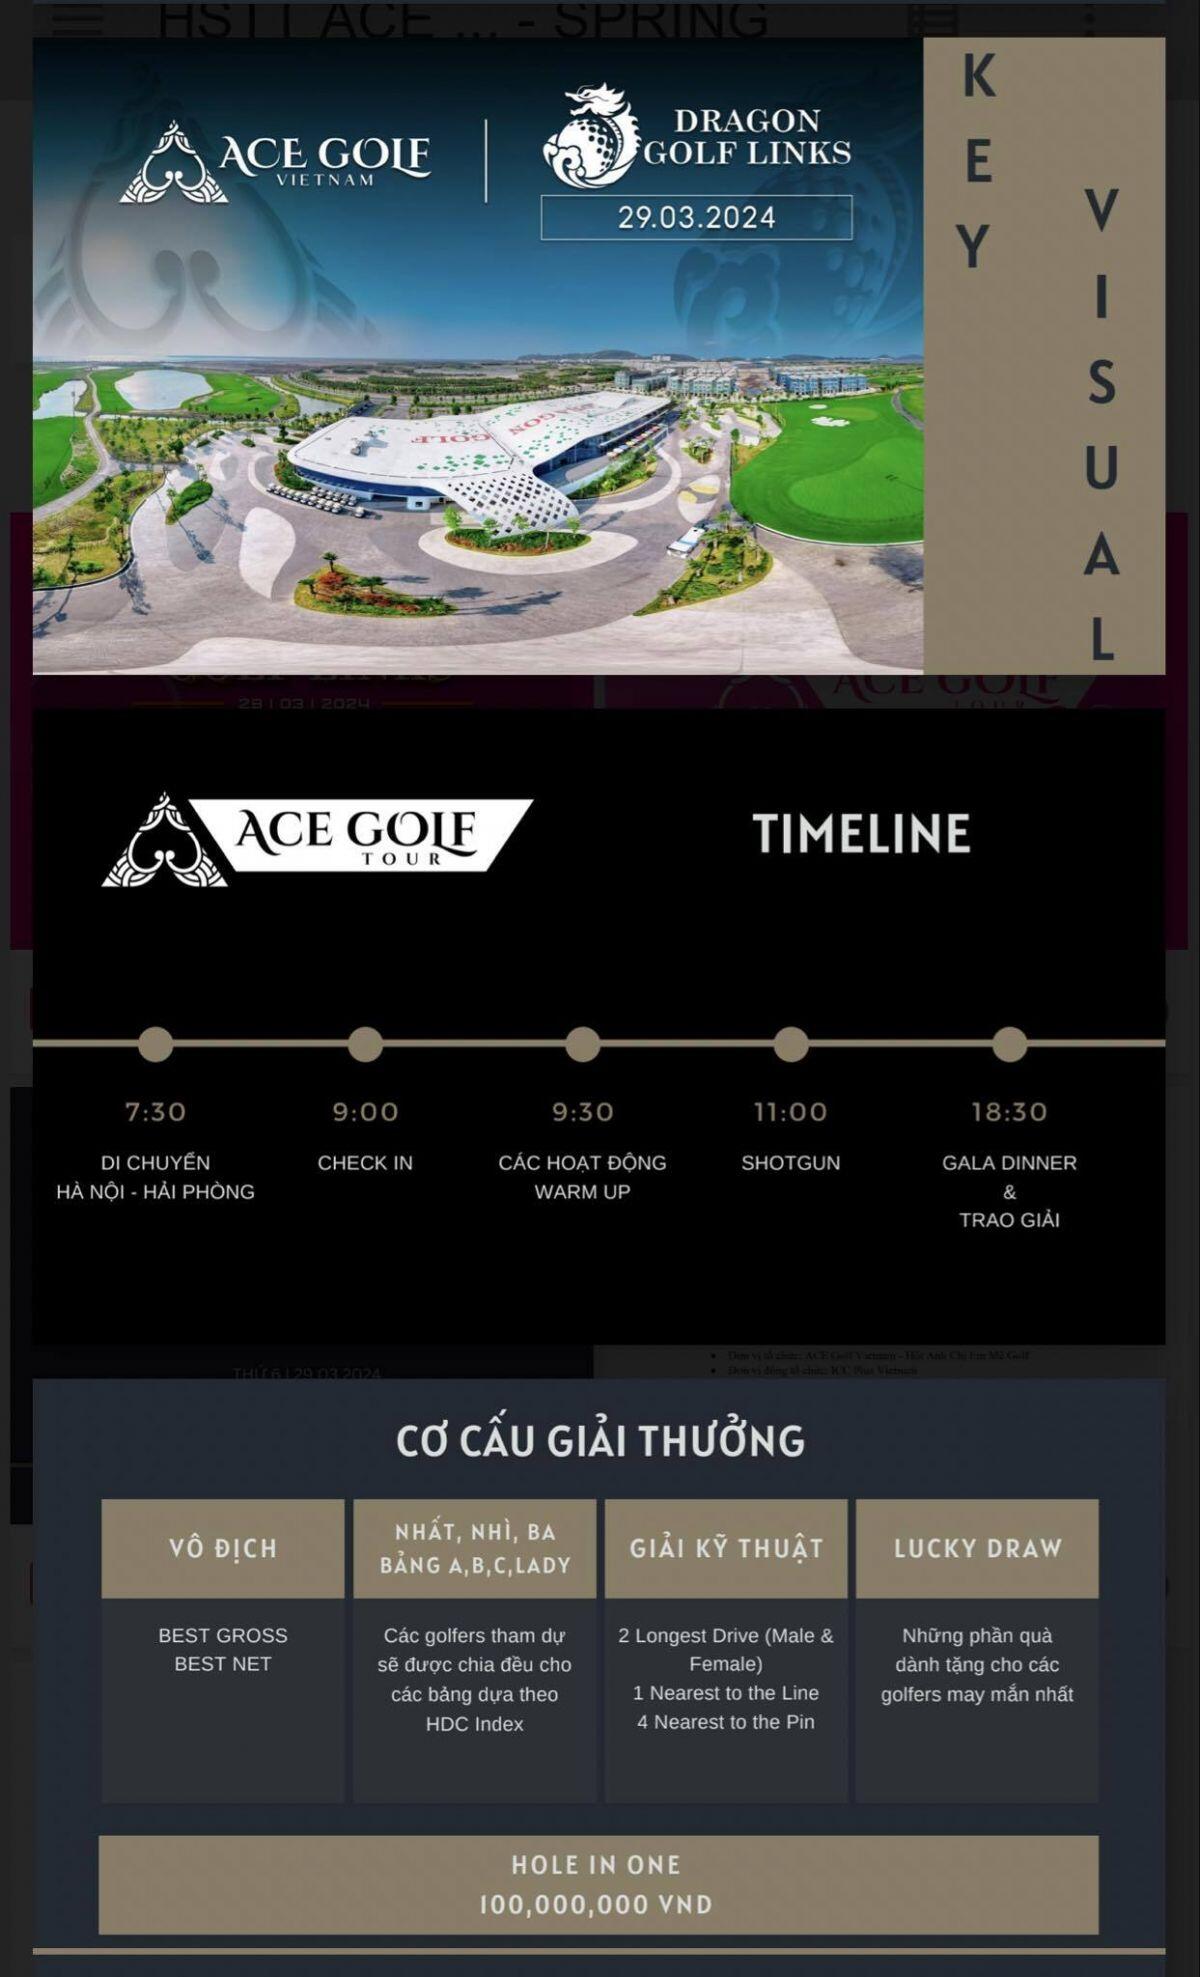 ACE Golf Tour 2024 - Spring Session: Giải đấu mở màn Xuân Giáp Thìn 2024 sắp khởi tranh